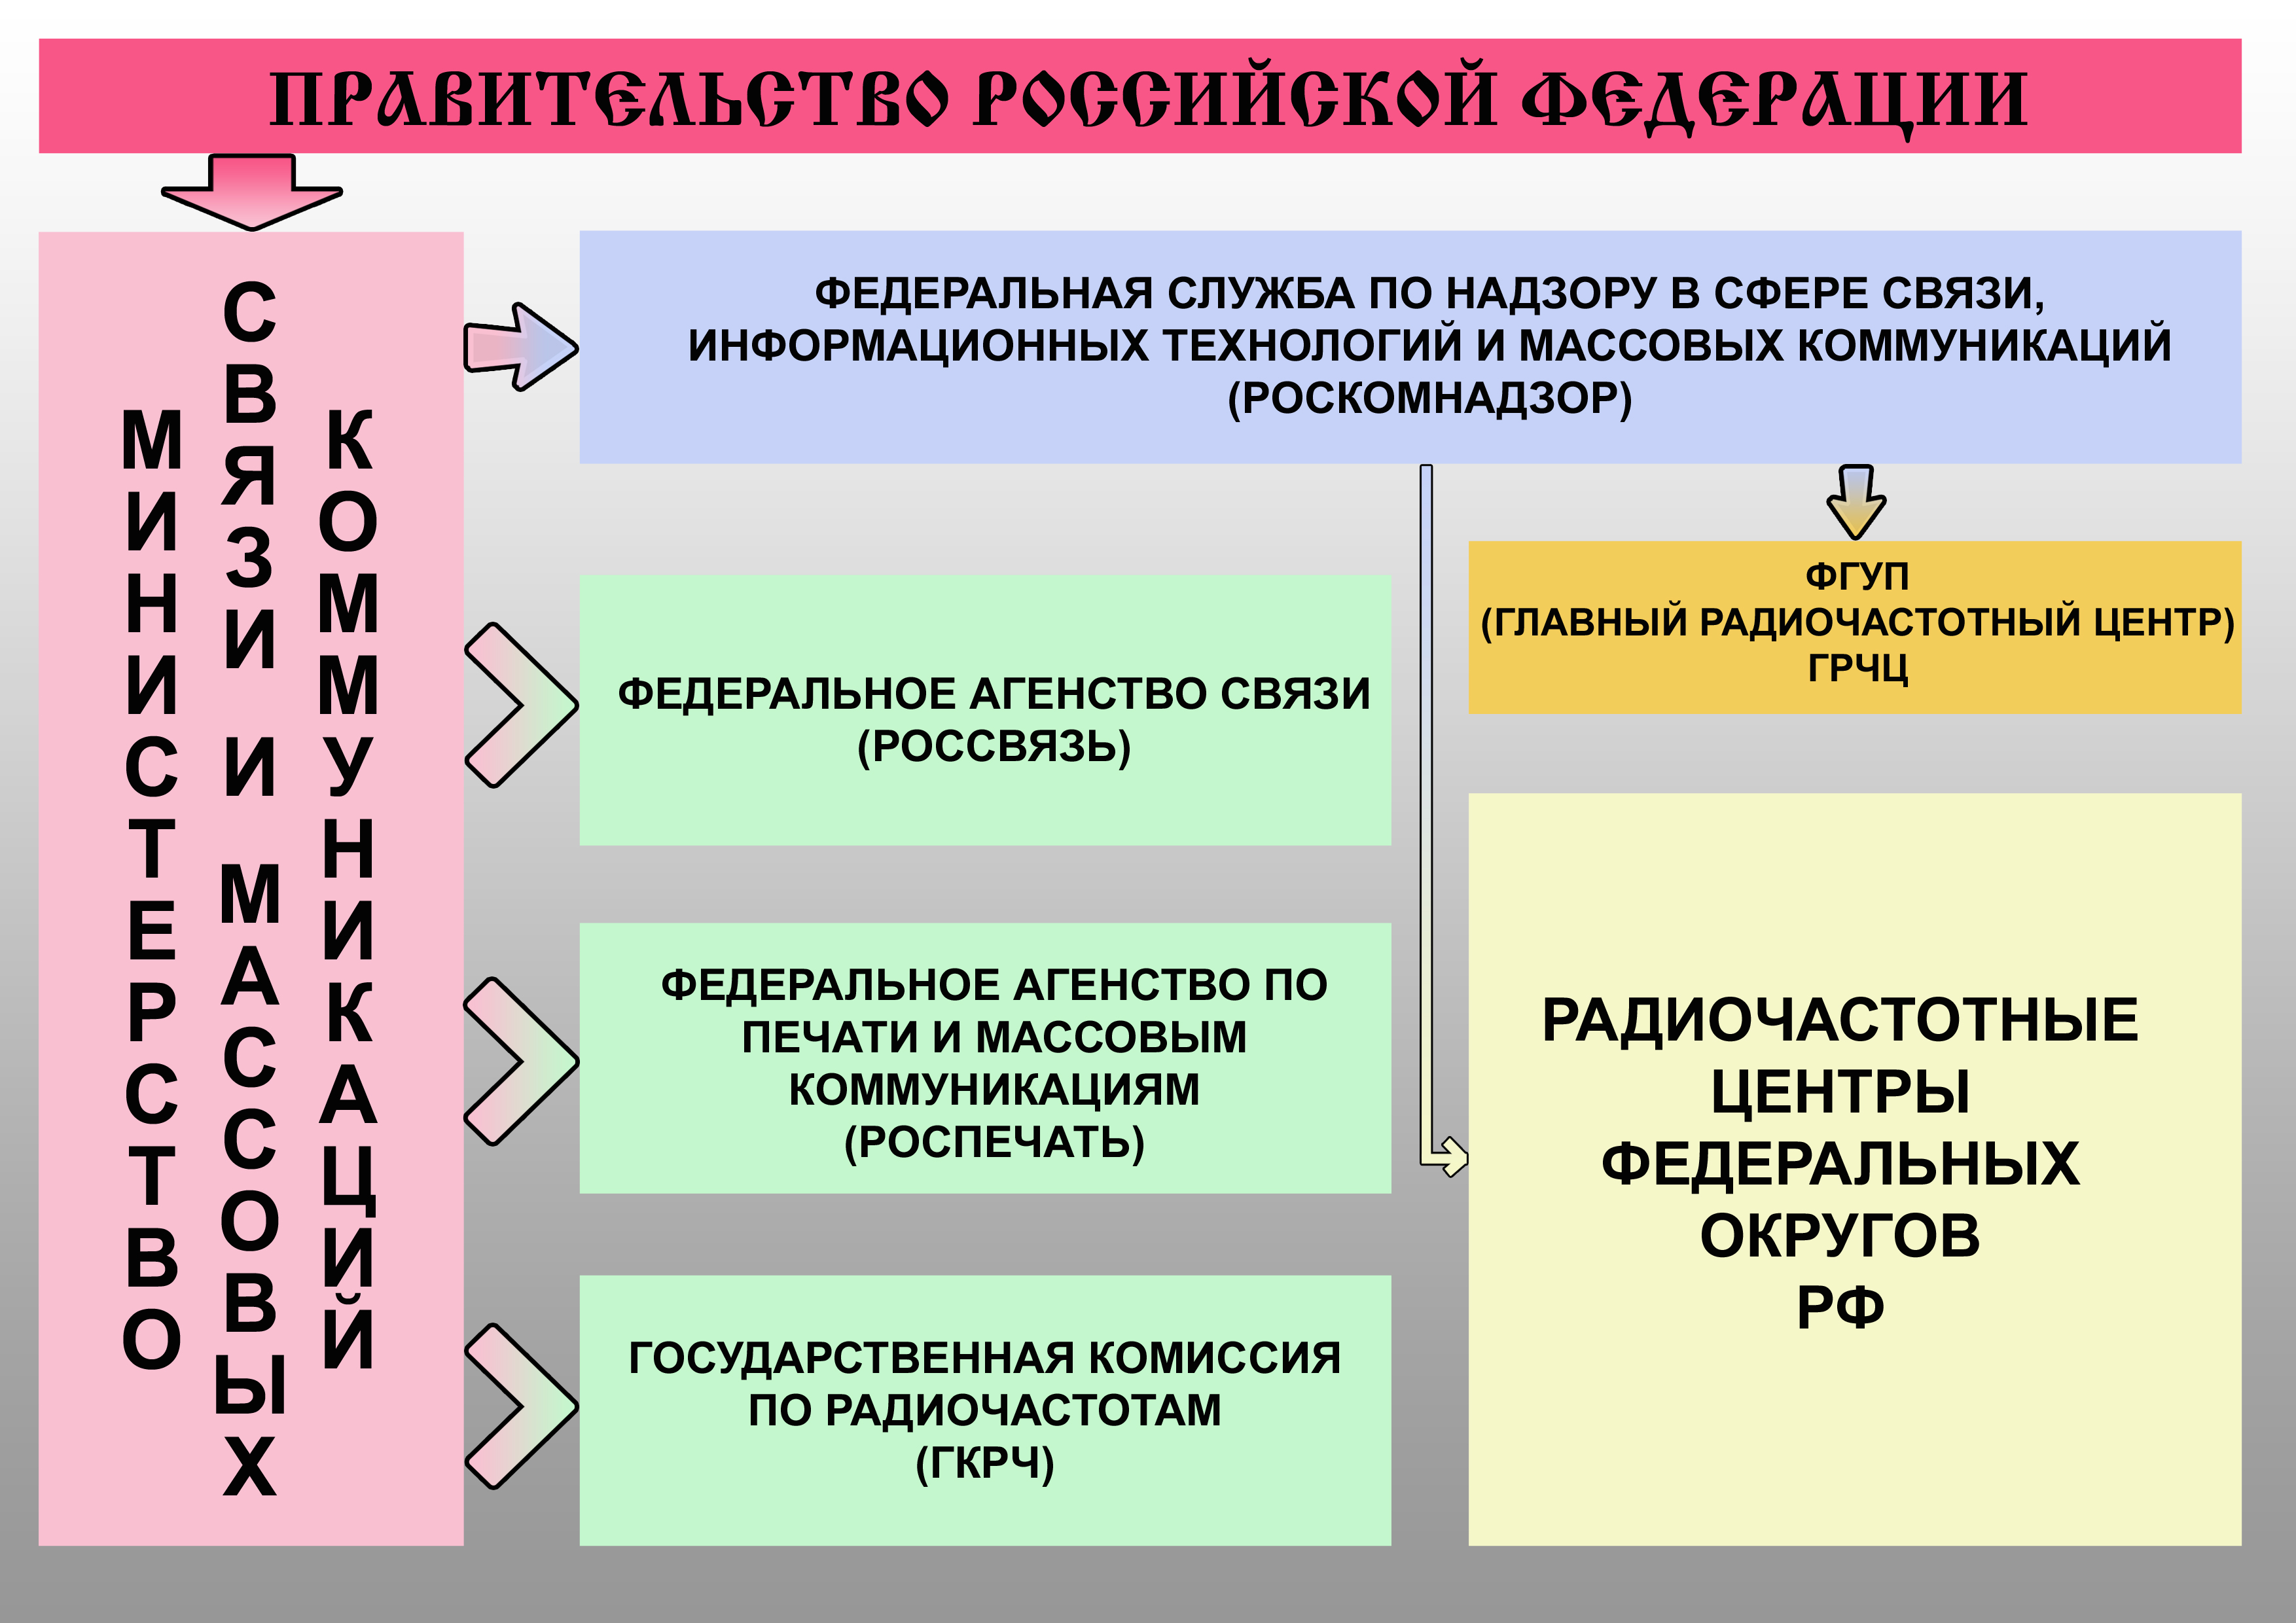 Структура коммуникаций в сфере связи РФ